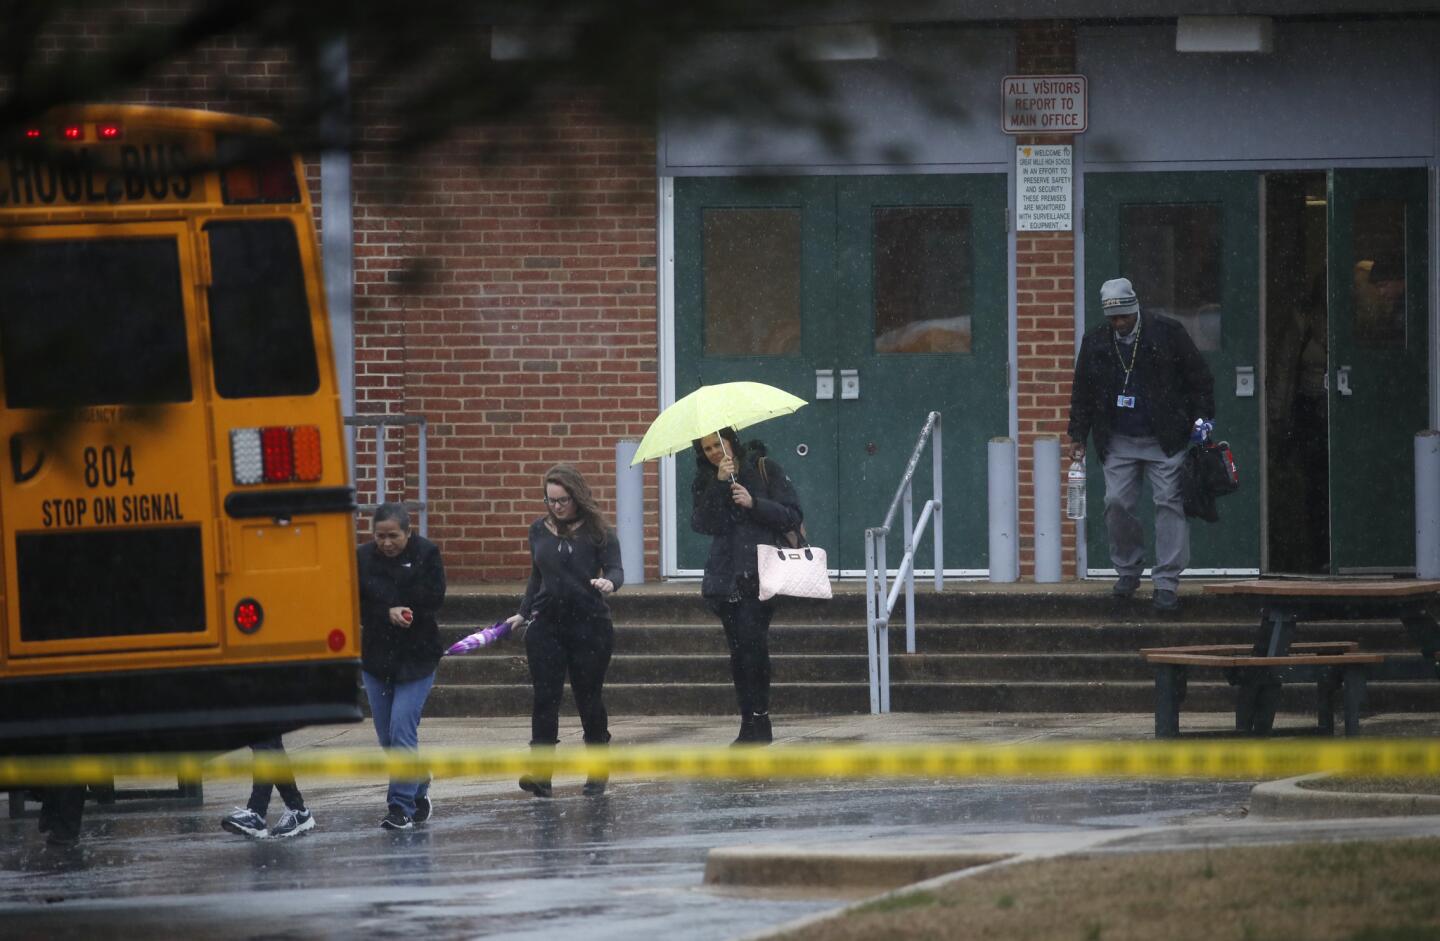 Maryland school shooting